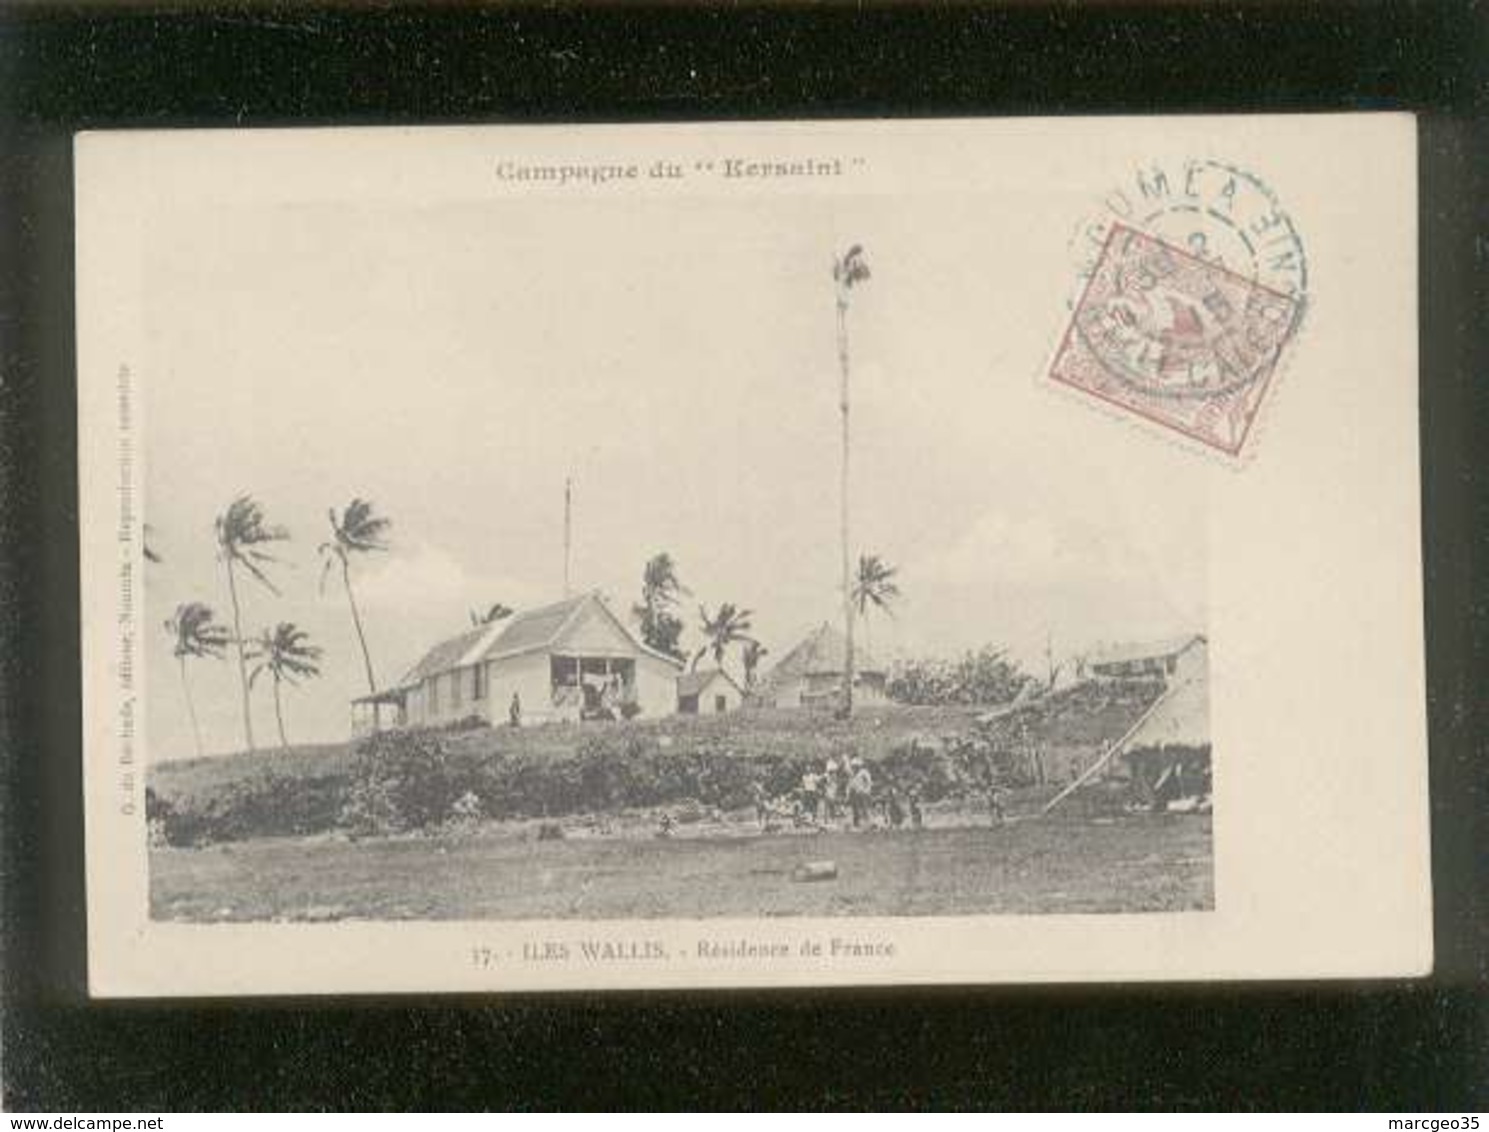 Campagne Du Kersaint Iles Wallis Résidence De France édit. G. De Béchade N° 37 - Wallis Y Futuna